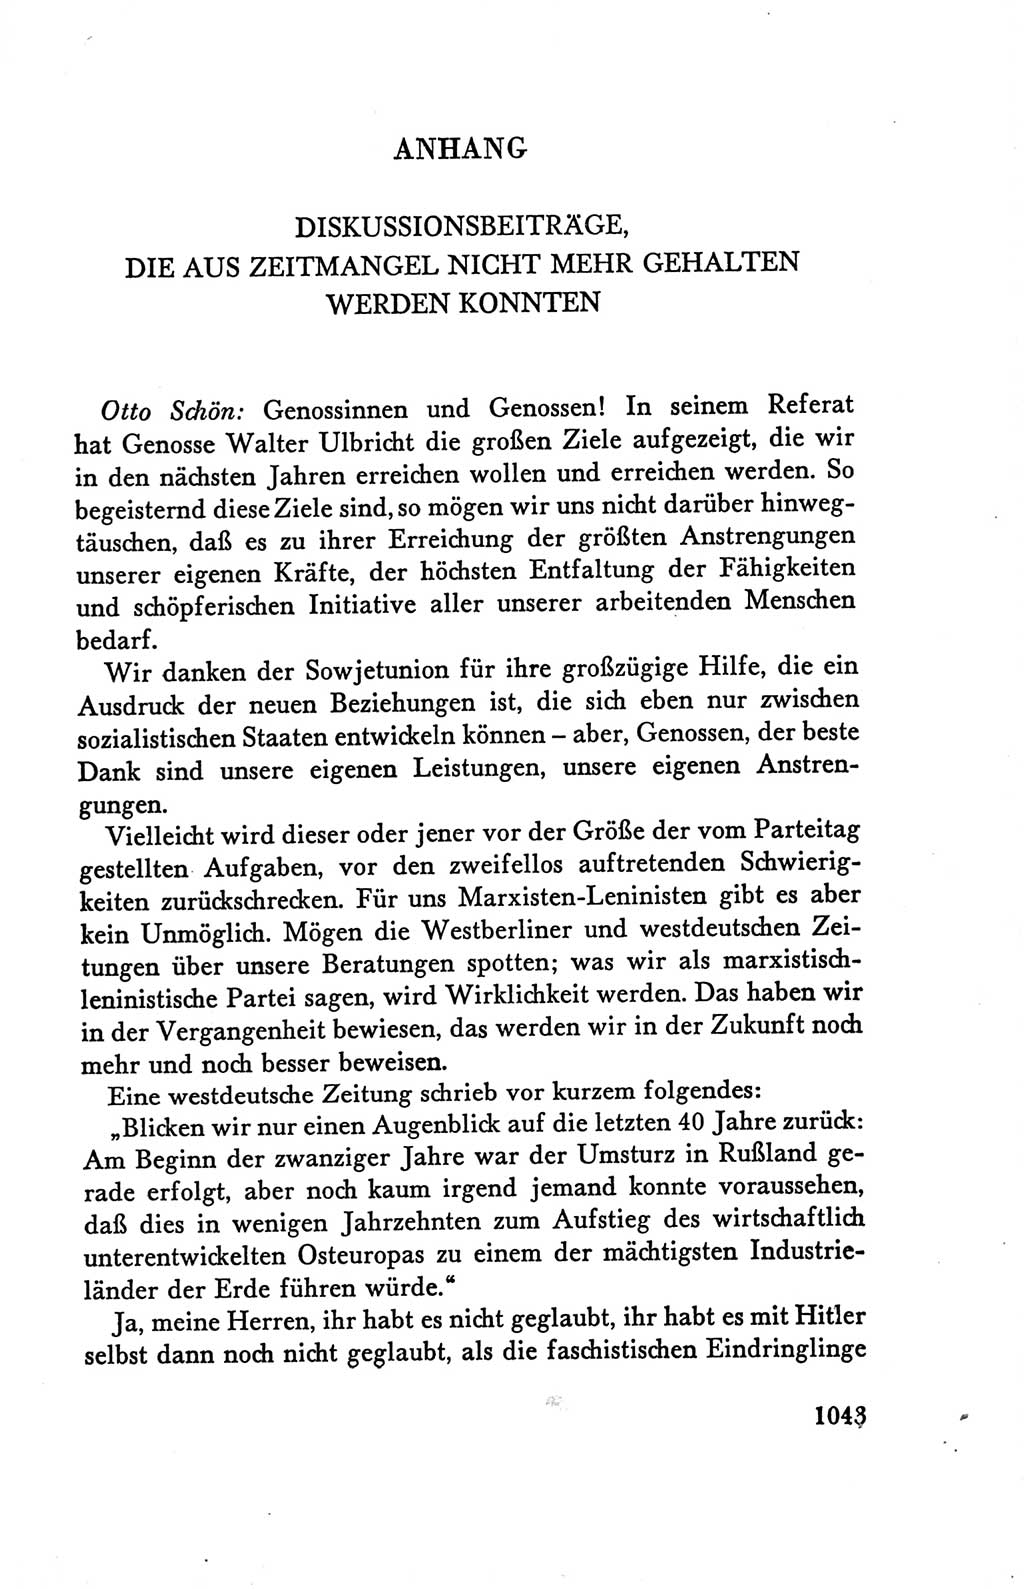 Protokoll der Verhandlungen des Ⅴ. Parteitages der Sozialistischen Einheitspartei Deutschlands (SED) [Deutsche Demokratische Republik (DDR)] 1958, Seite 1043